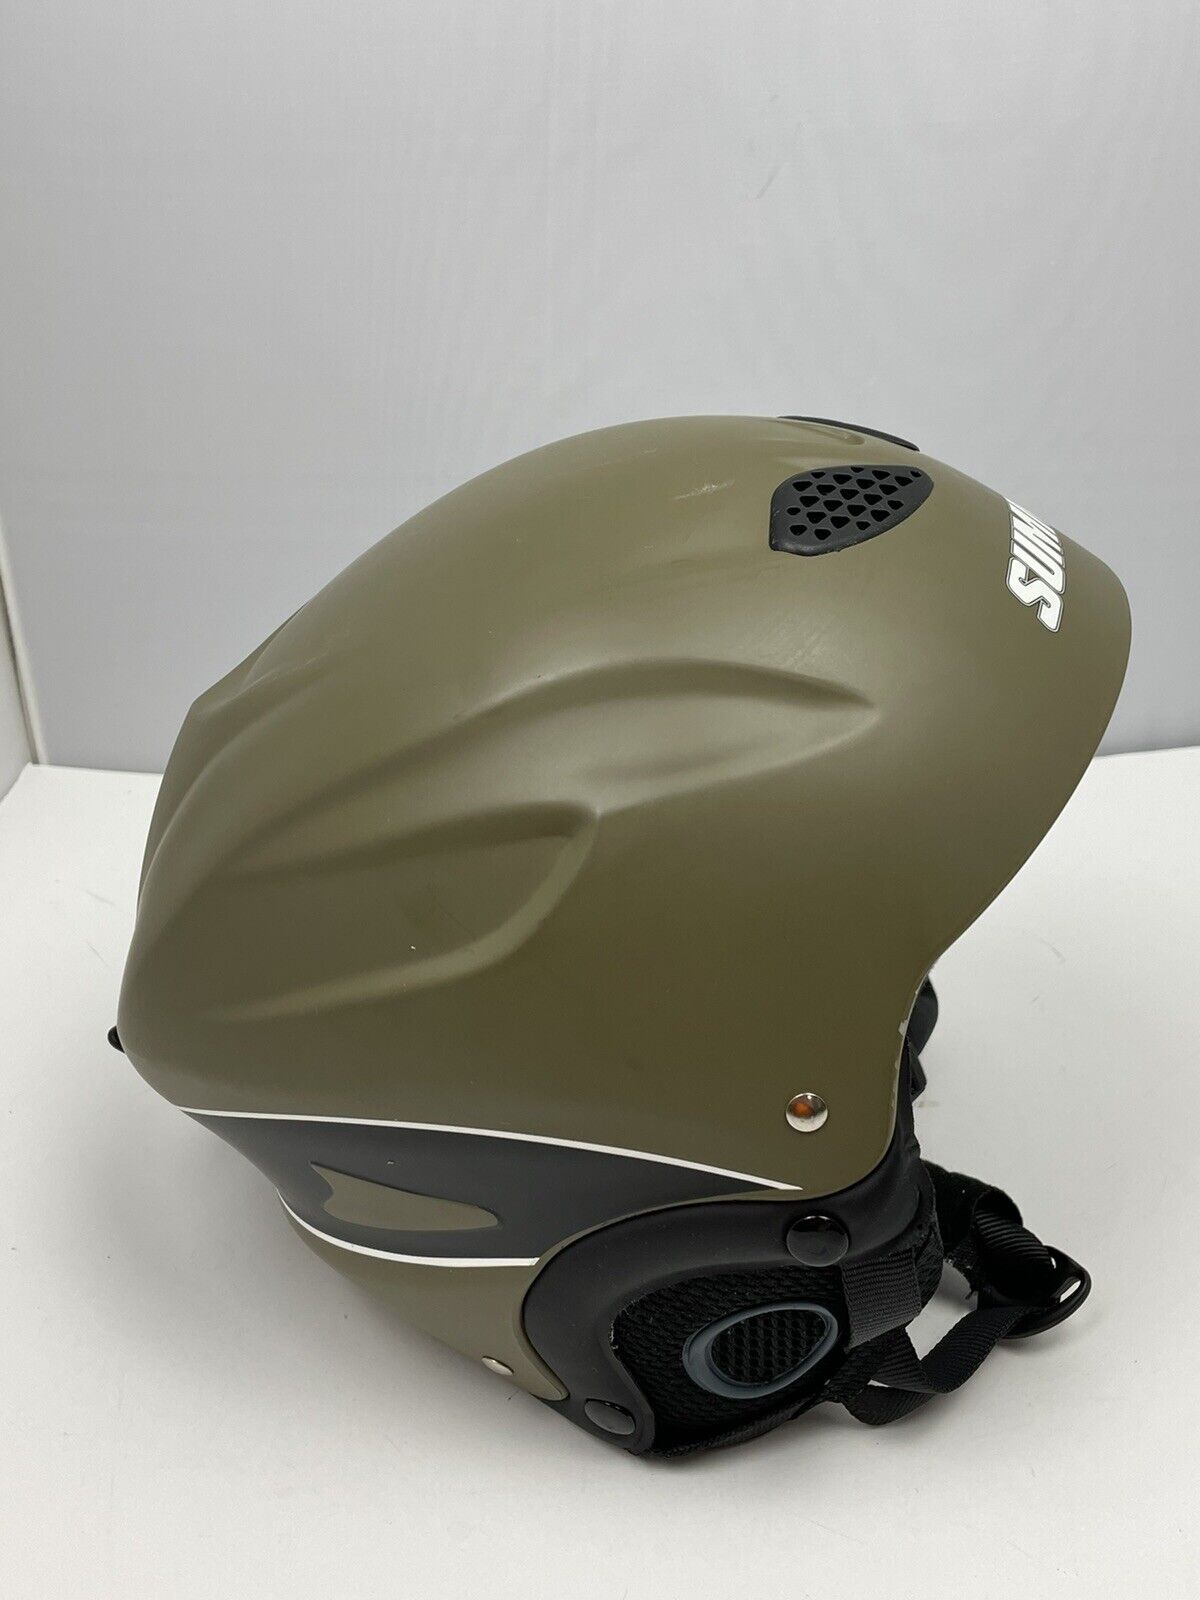 Summit Helmet for Alpine Skier Snowboarder Model MS-85  Size M (